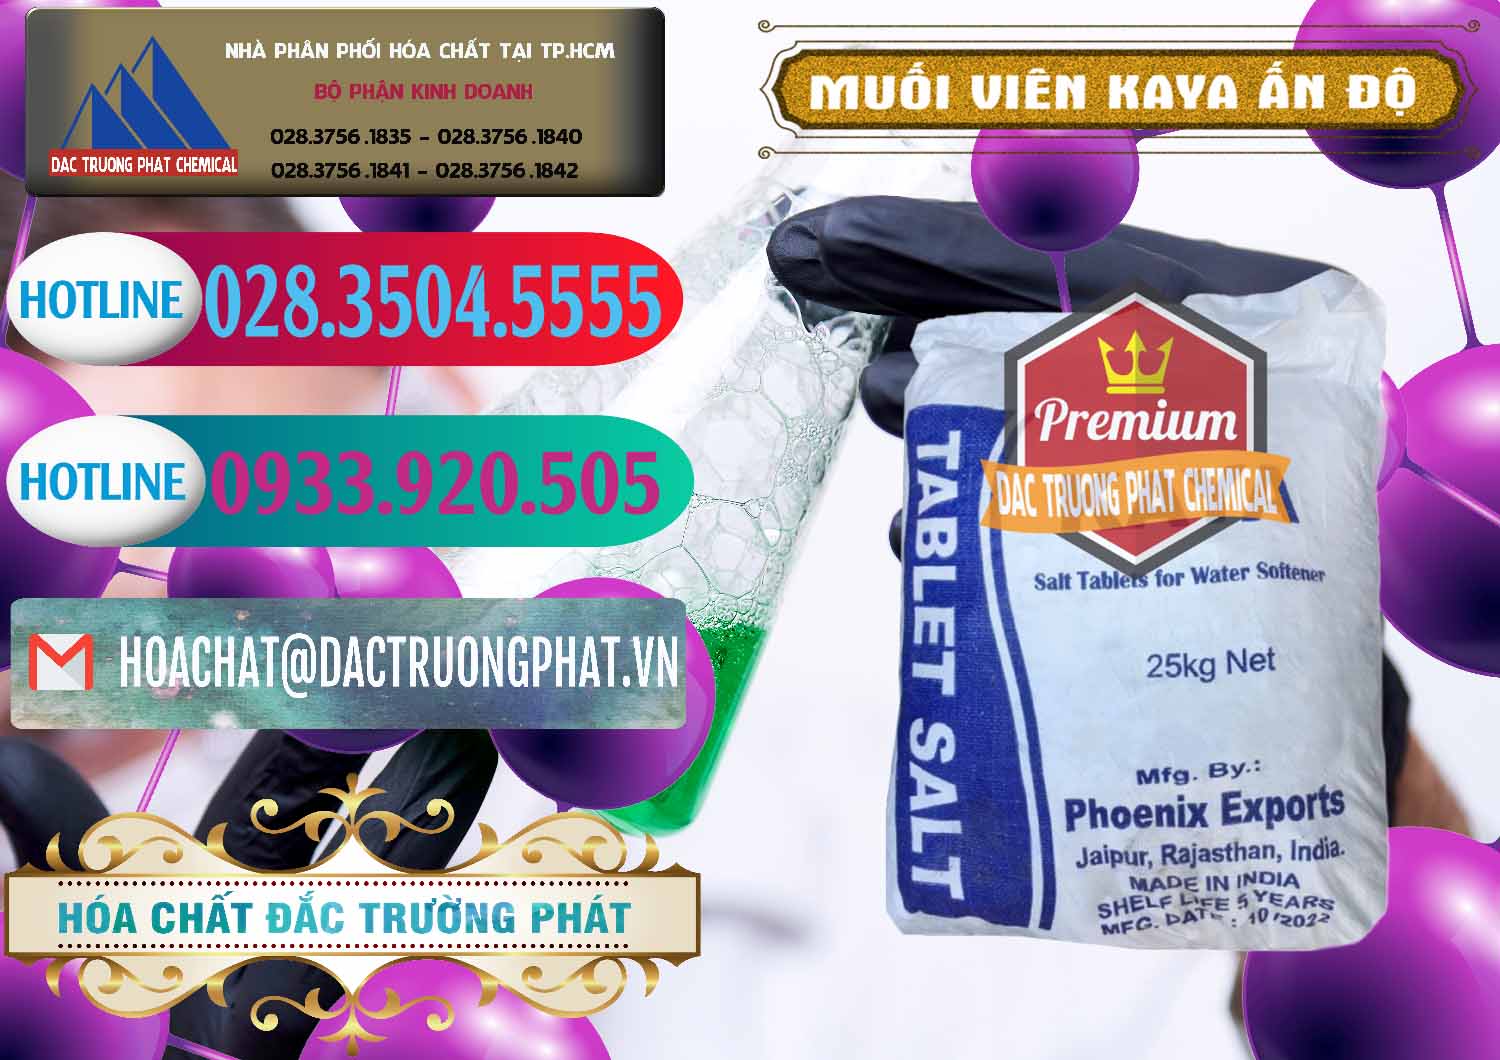 Chuyên cung cấp & bán Muối NaCL – Sodium Chloride Dạng Viên Tablets Kaya Ấn Độ India - 0368 - Công ty chuyên cung cấp _ bán hóa chất tại TP.HCM - truongphat.vn